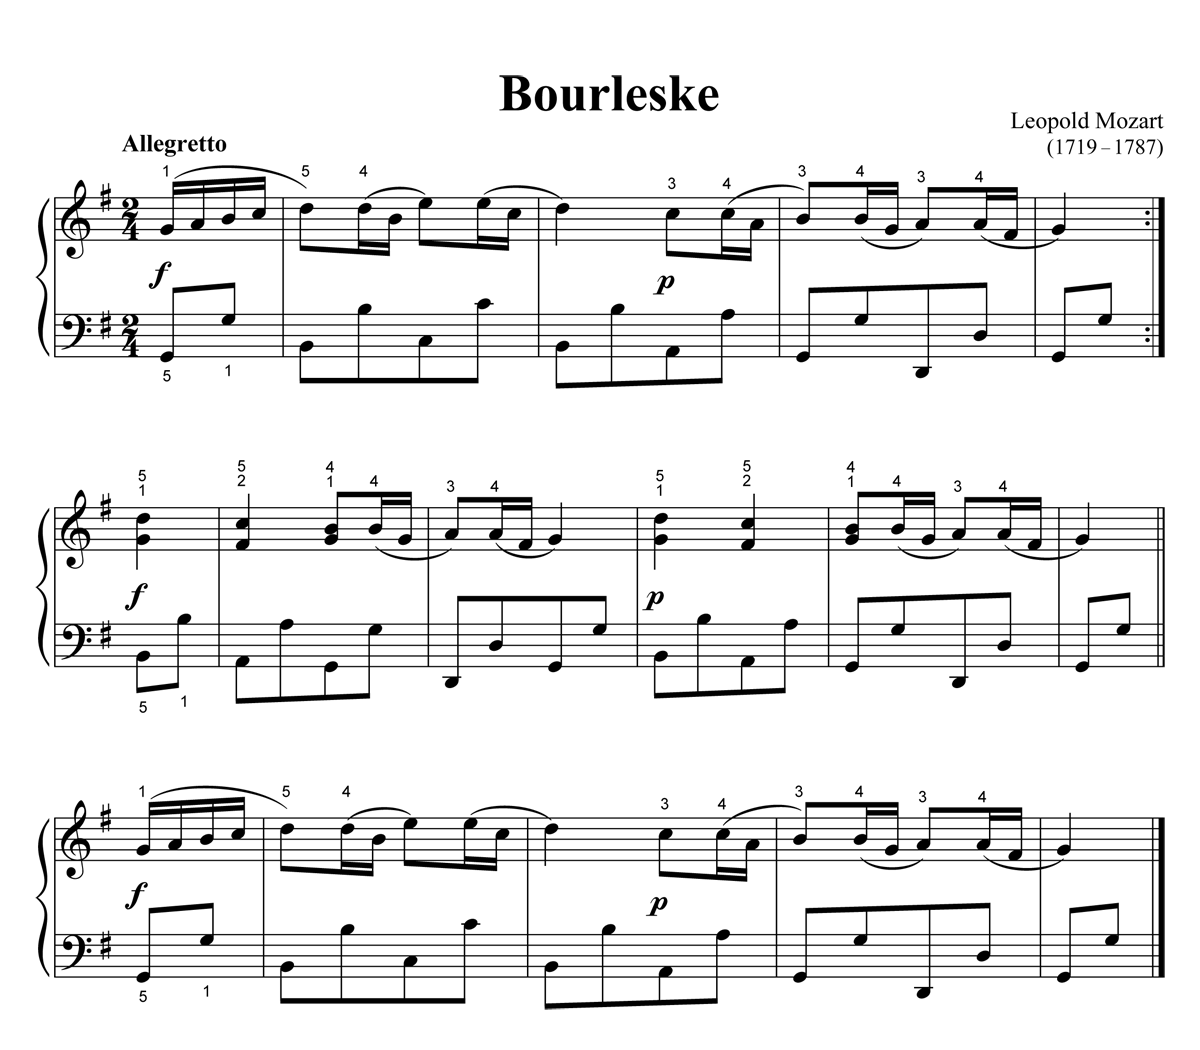 Noten zu Leopold Mozarts Bourleske